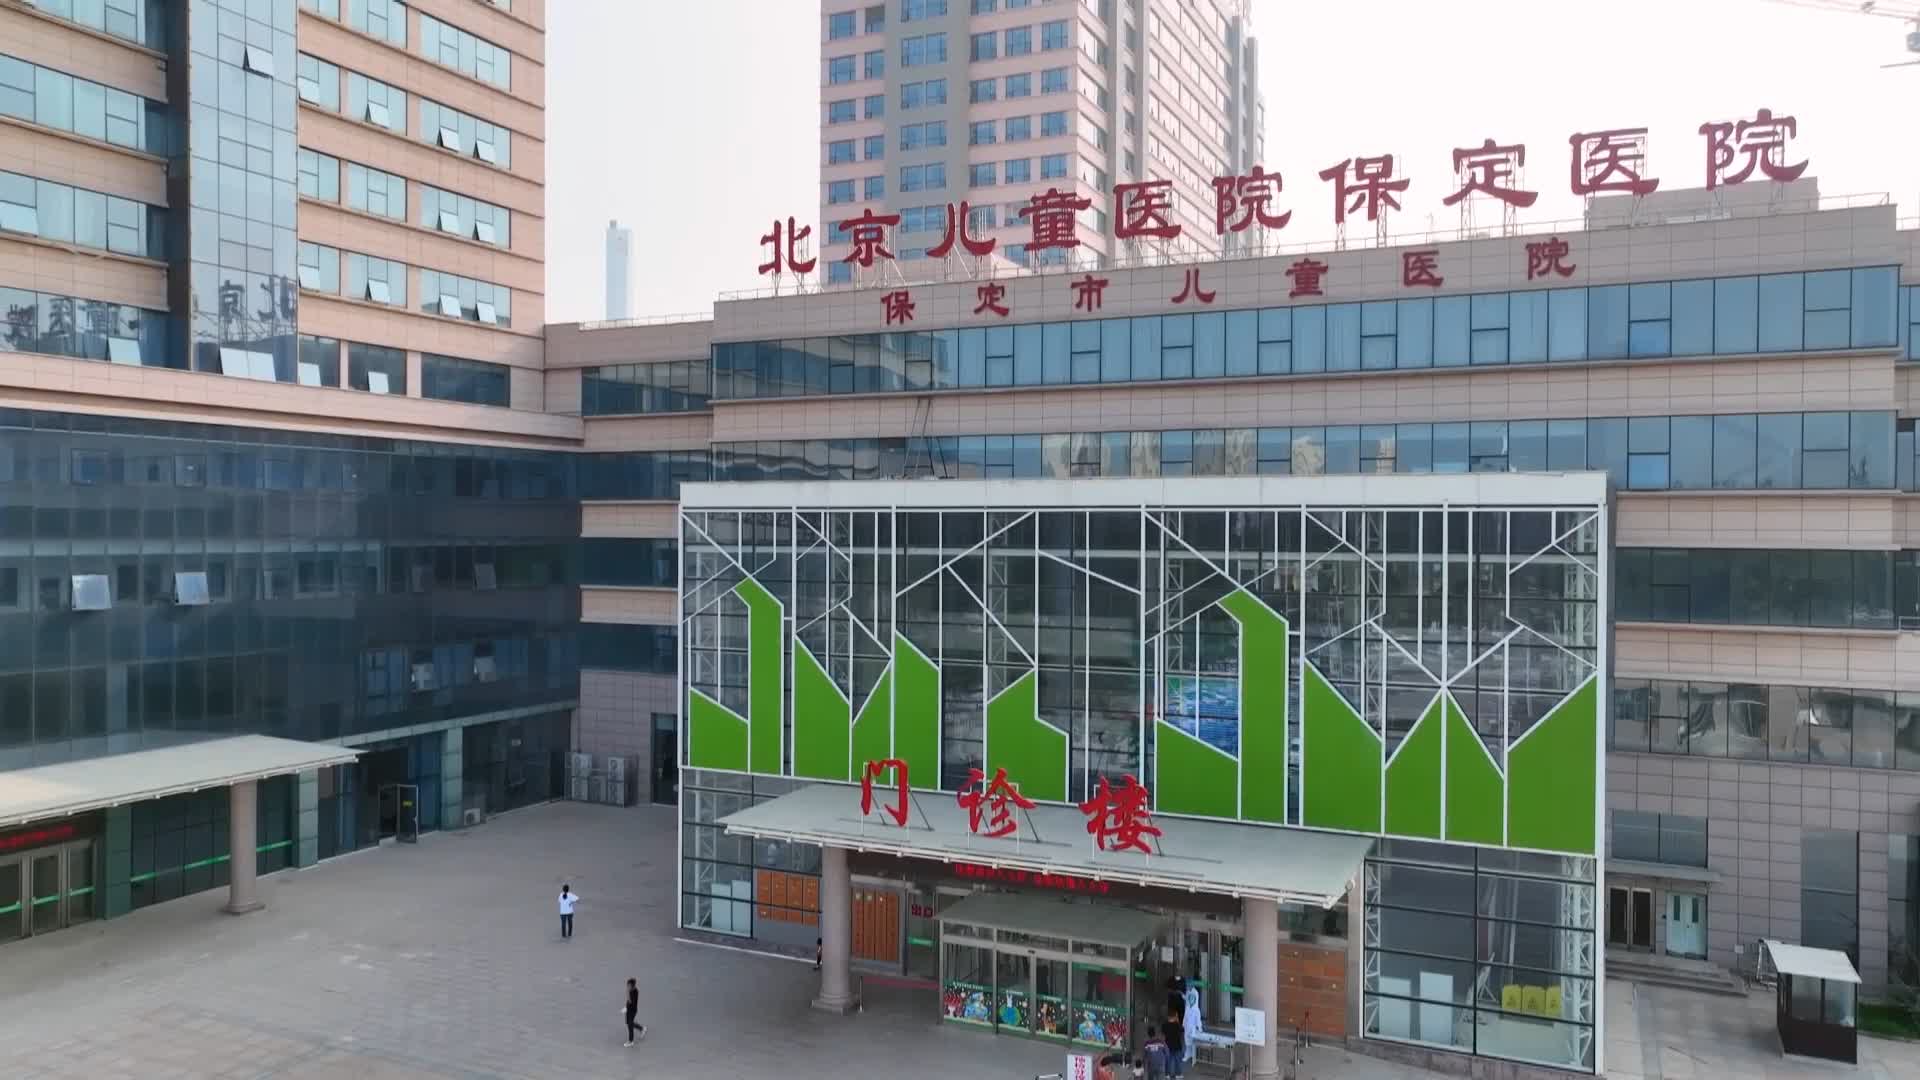 2014年,京津冀协同发展上升为国家战略,这也为保定市儿童医院带来了